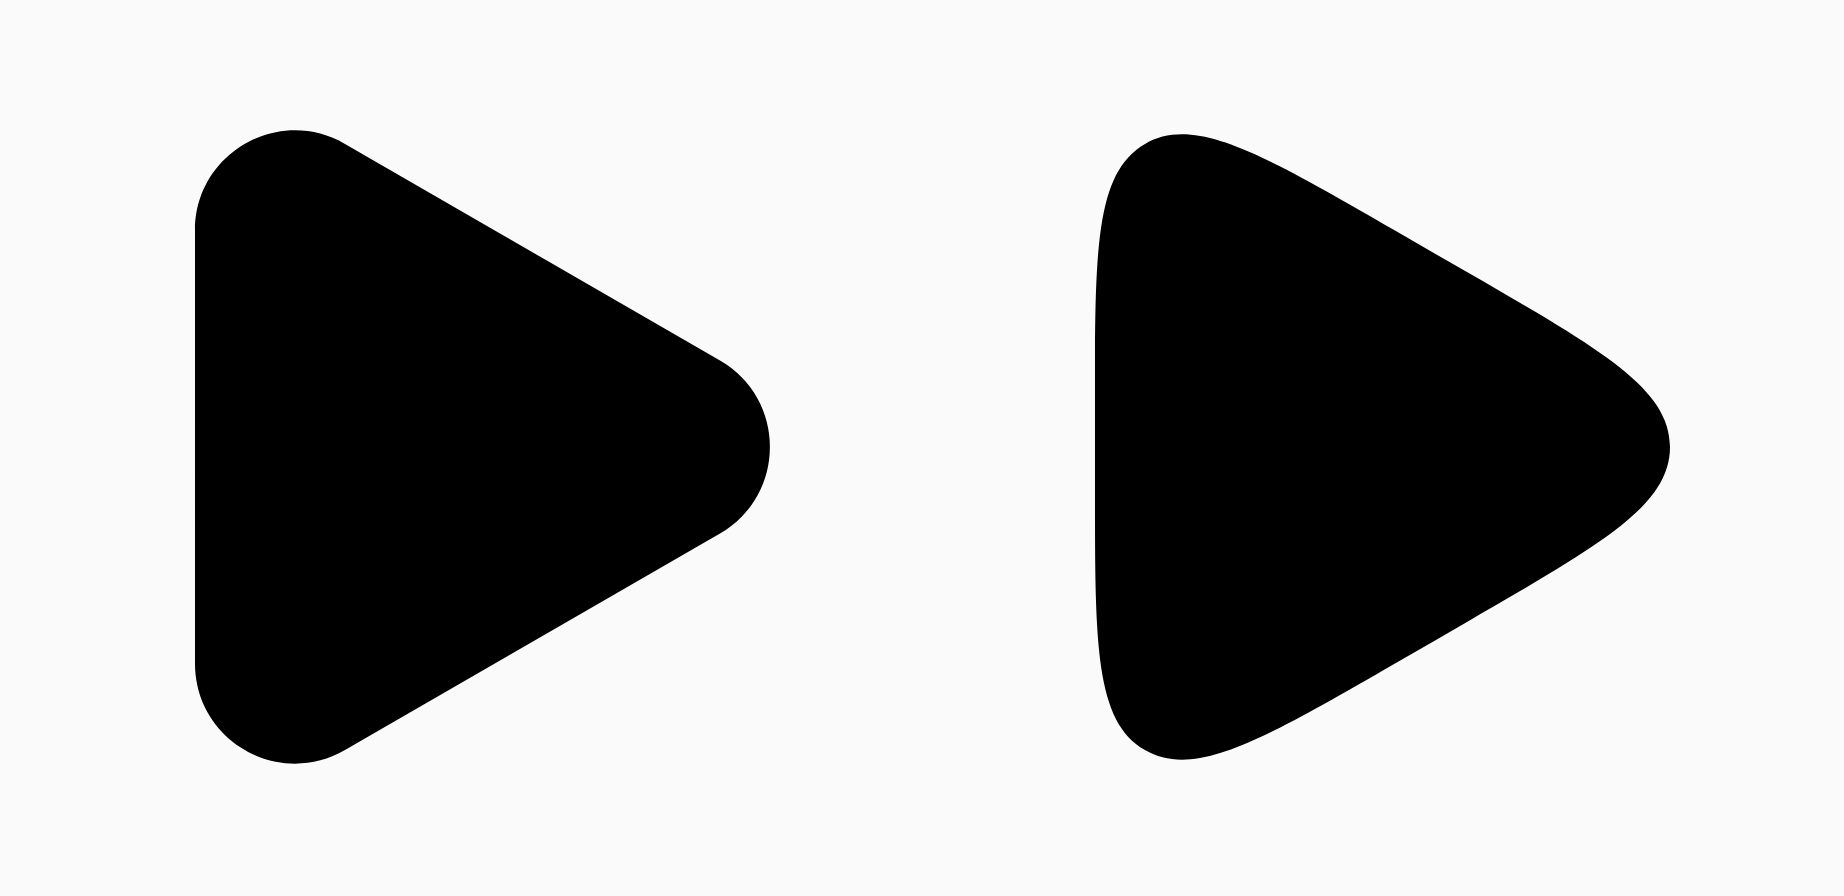 平滑化パラメータの違いを示す 2 つの黒い三角形。